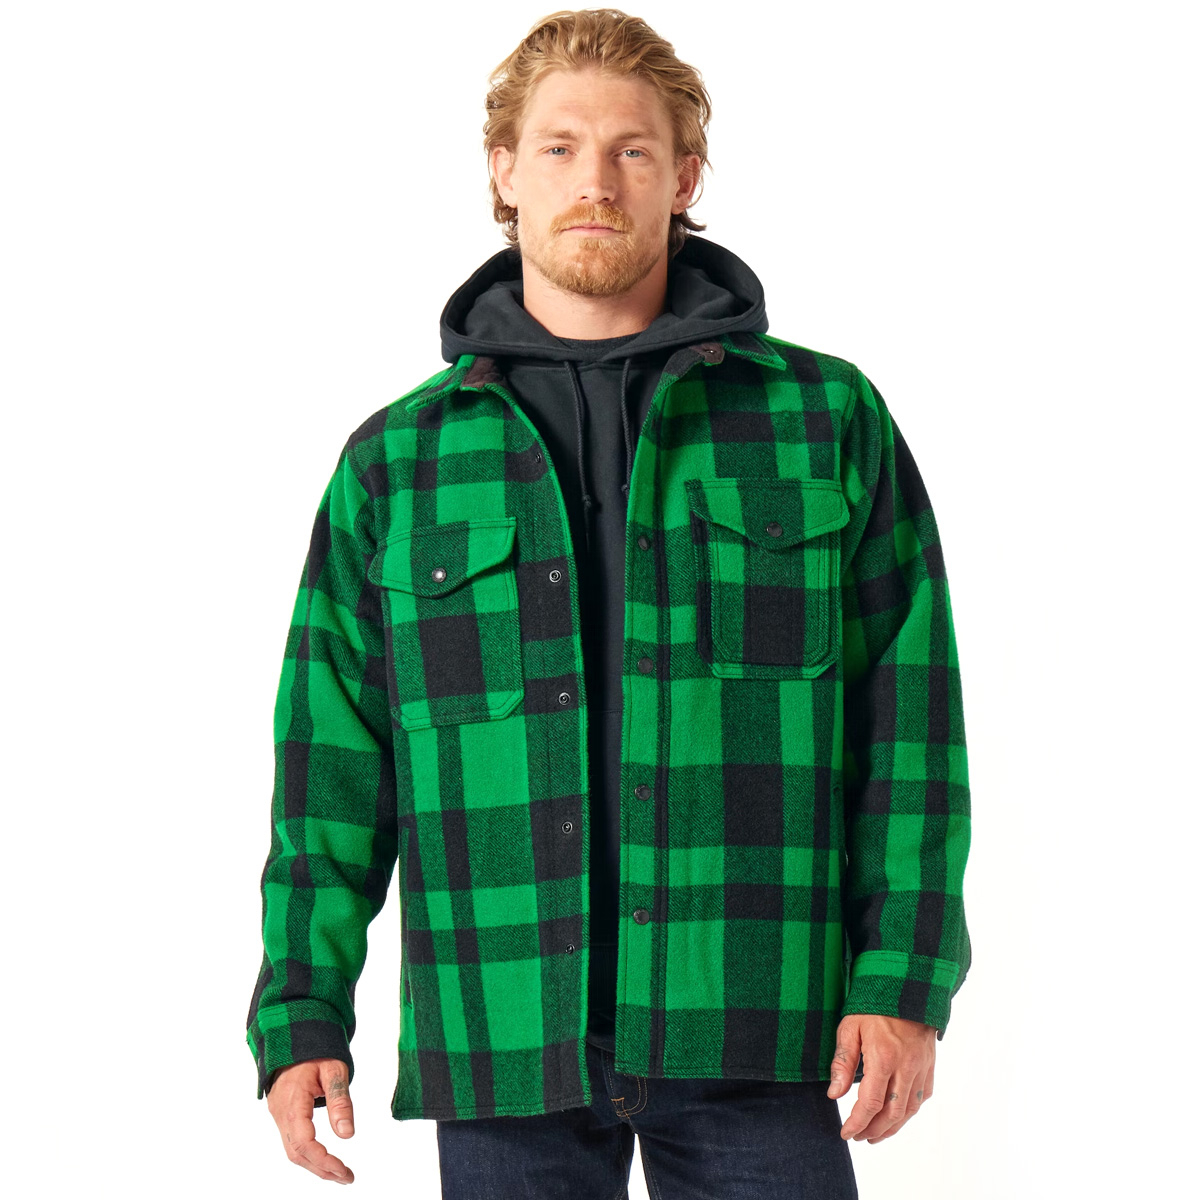 Filson Mackinaw Wool Jac Shirt Acid Green/Black Heritage Plaid, für Komfort, natürliche wasserabweisende Eigenschaften und isolierende Wärme bei allen Wetterbedingungen